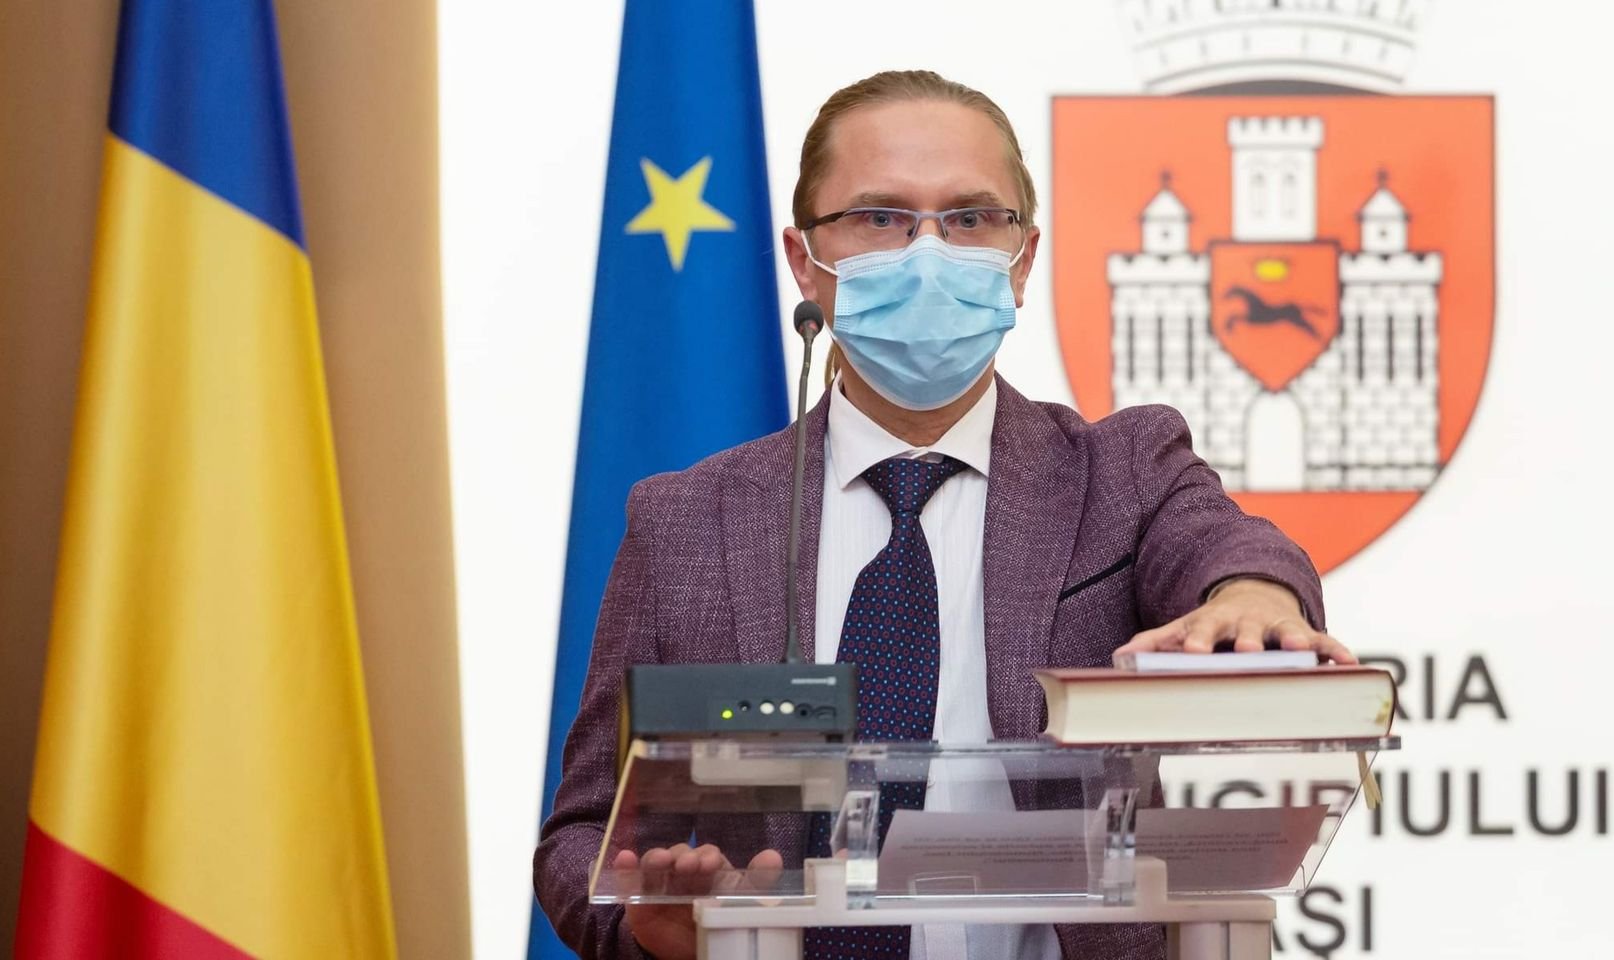  Consilierul local Iulian Huşanu şi-a anunţat demisia după un articol apărut în ZDI